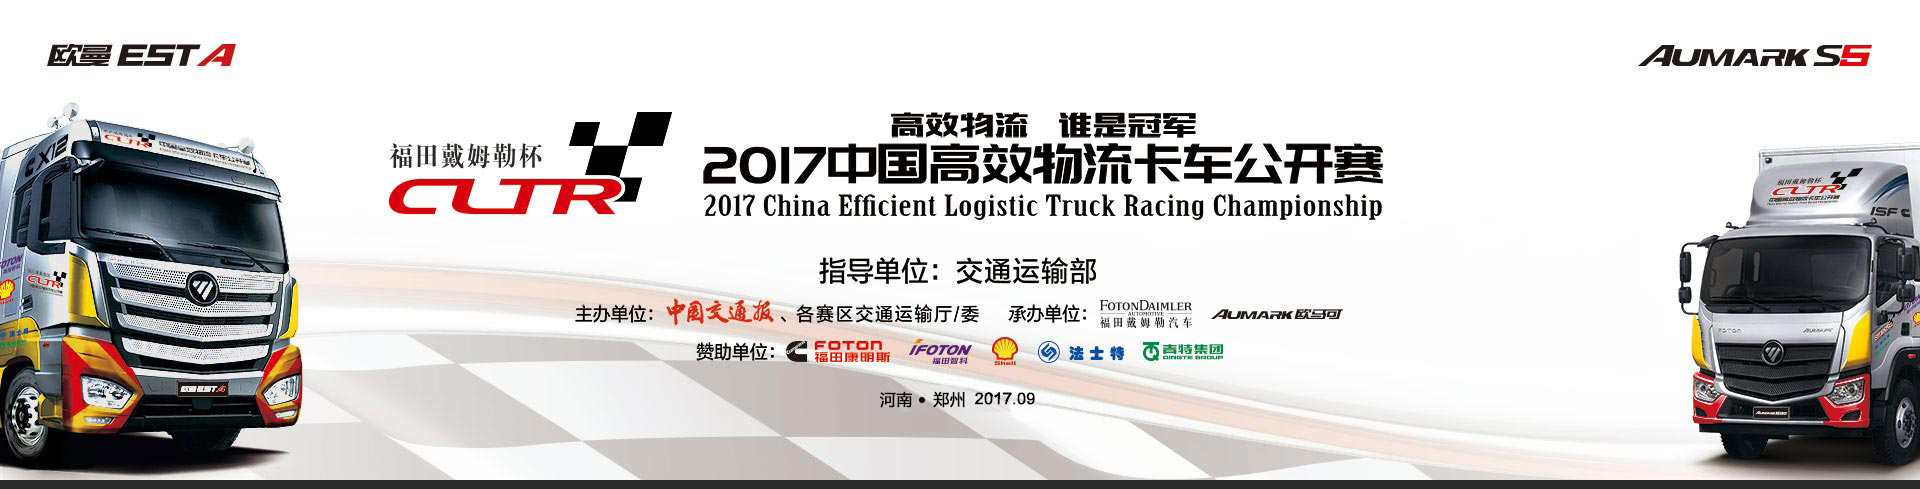 福田戴姆勒2017中国高效物流卡车公开赛